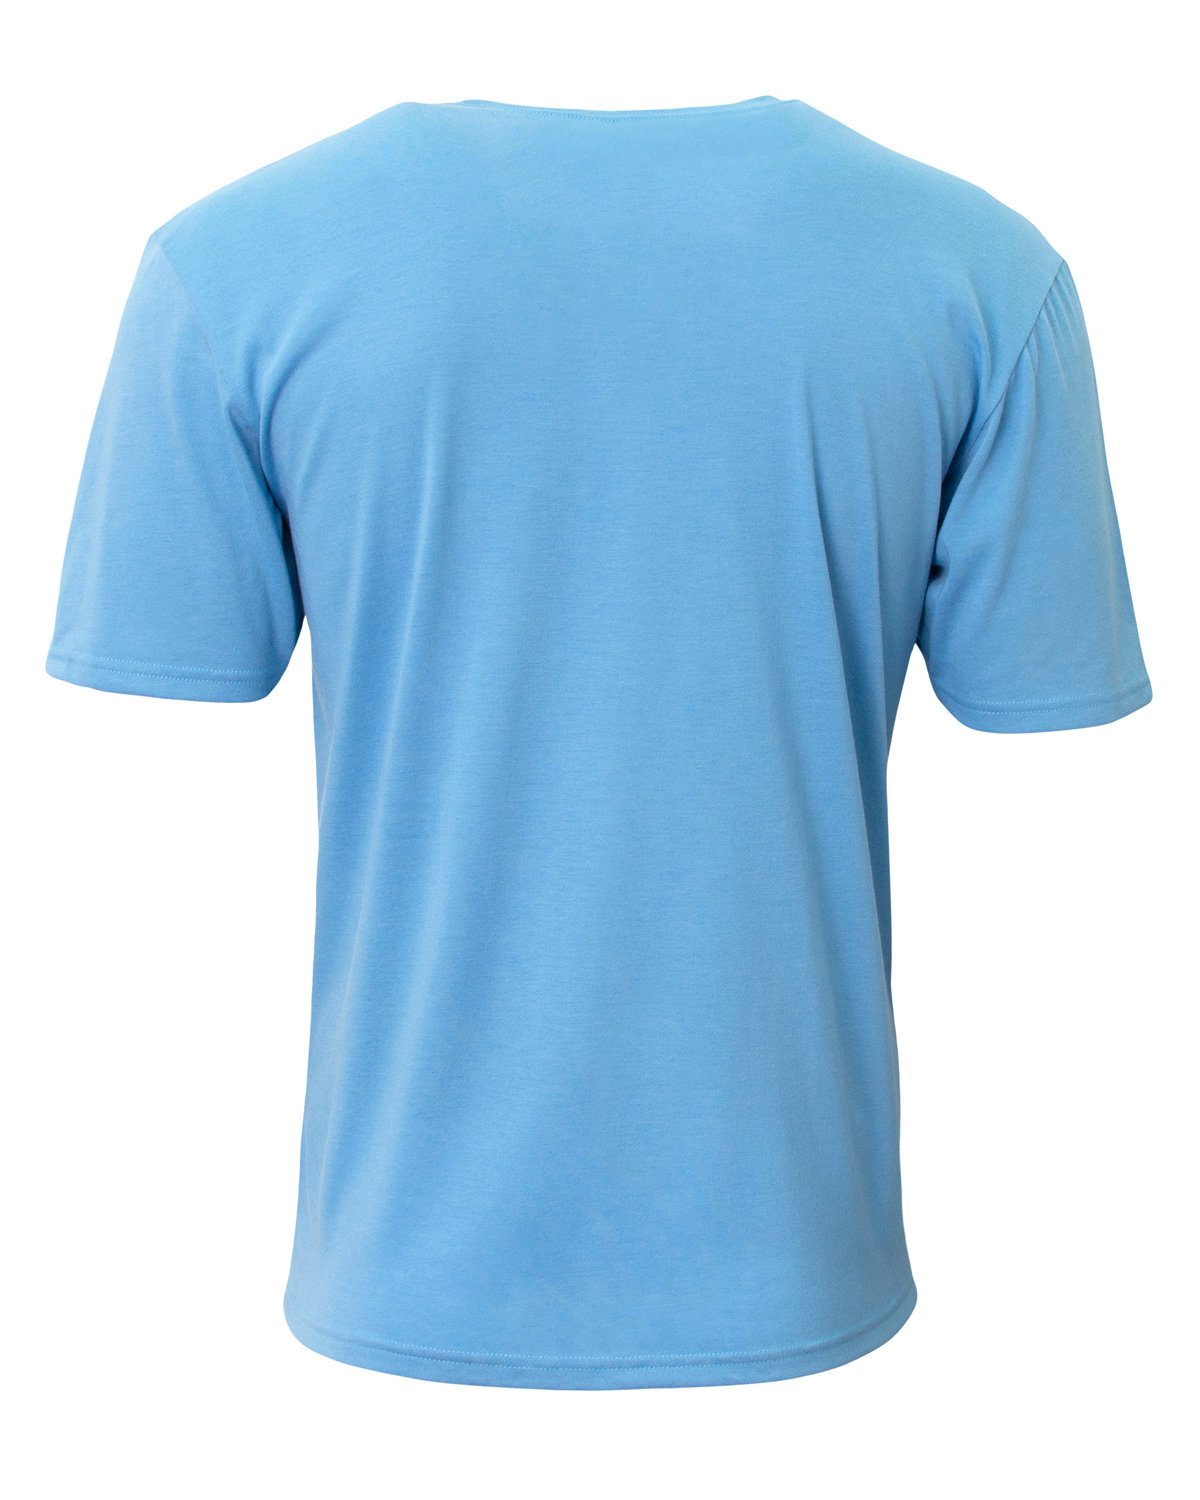 A4 Adult Softek T-Shirt | alphabroder